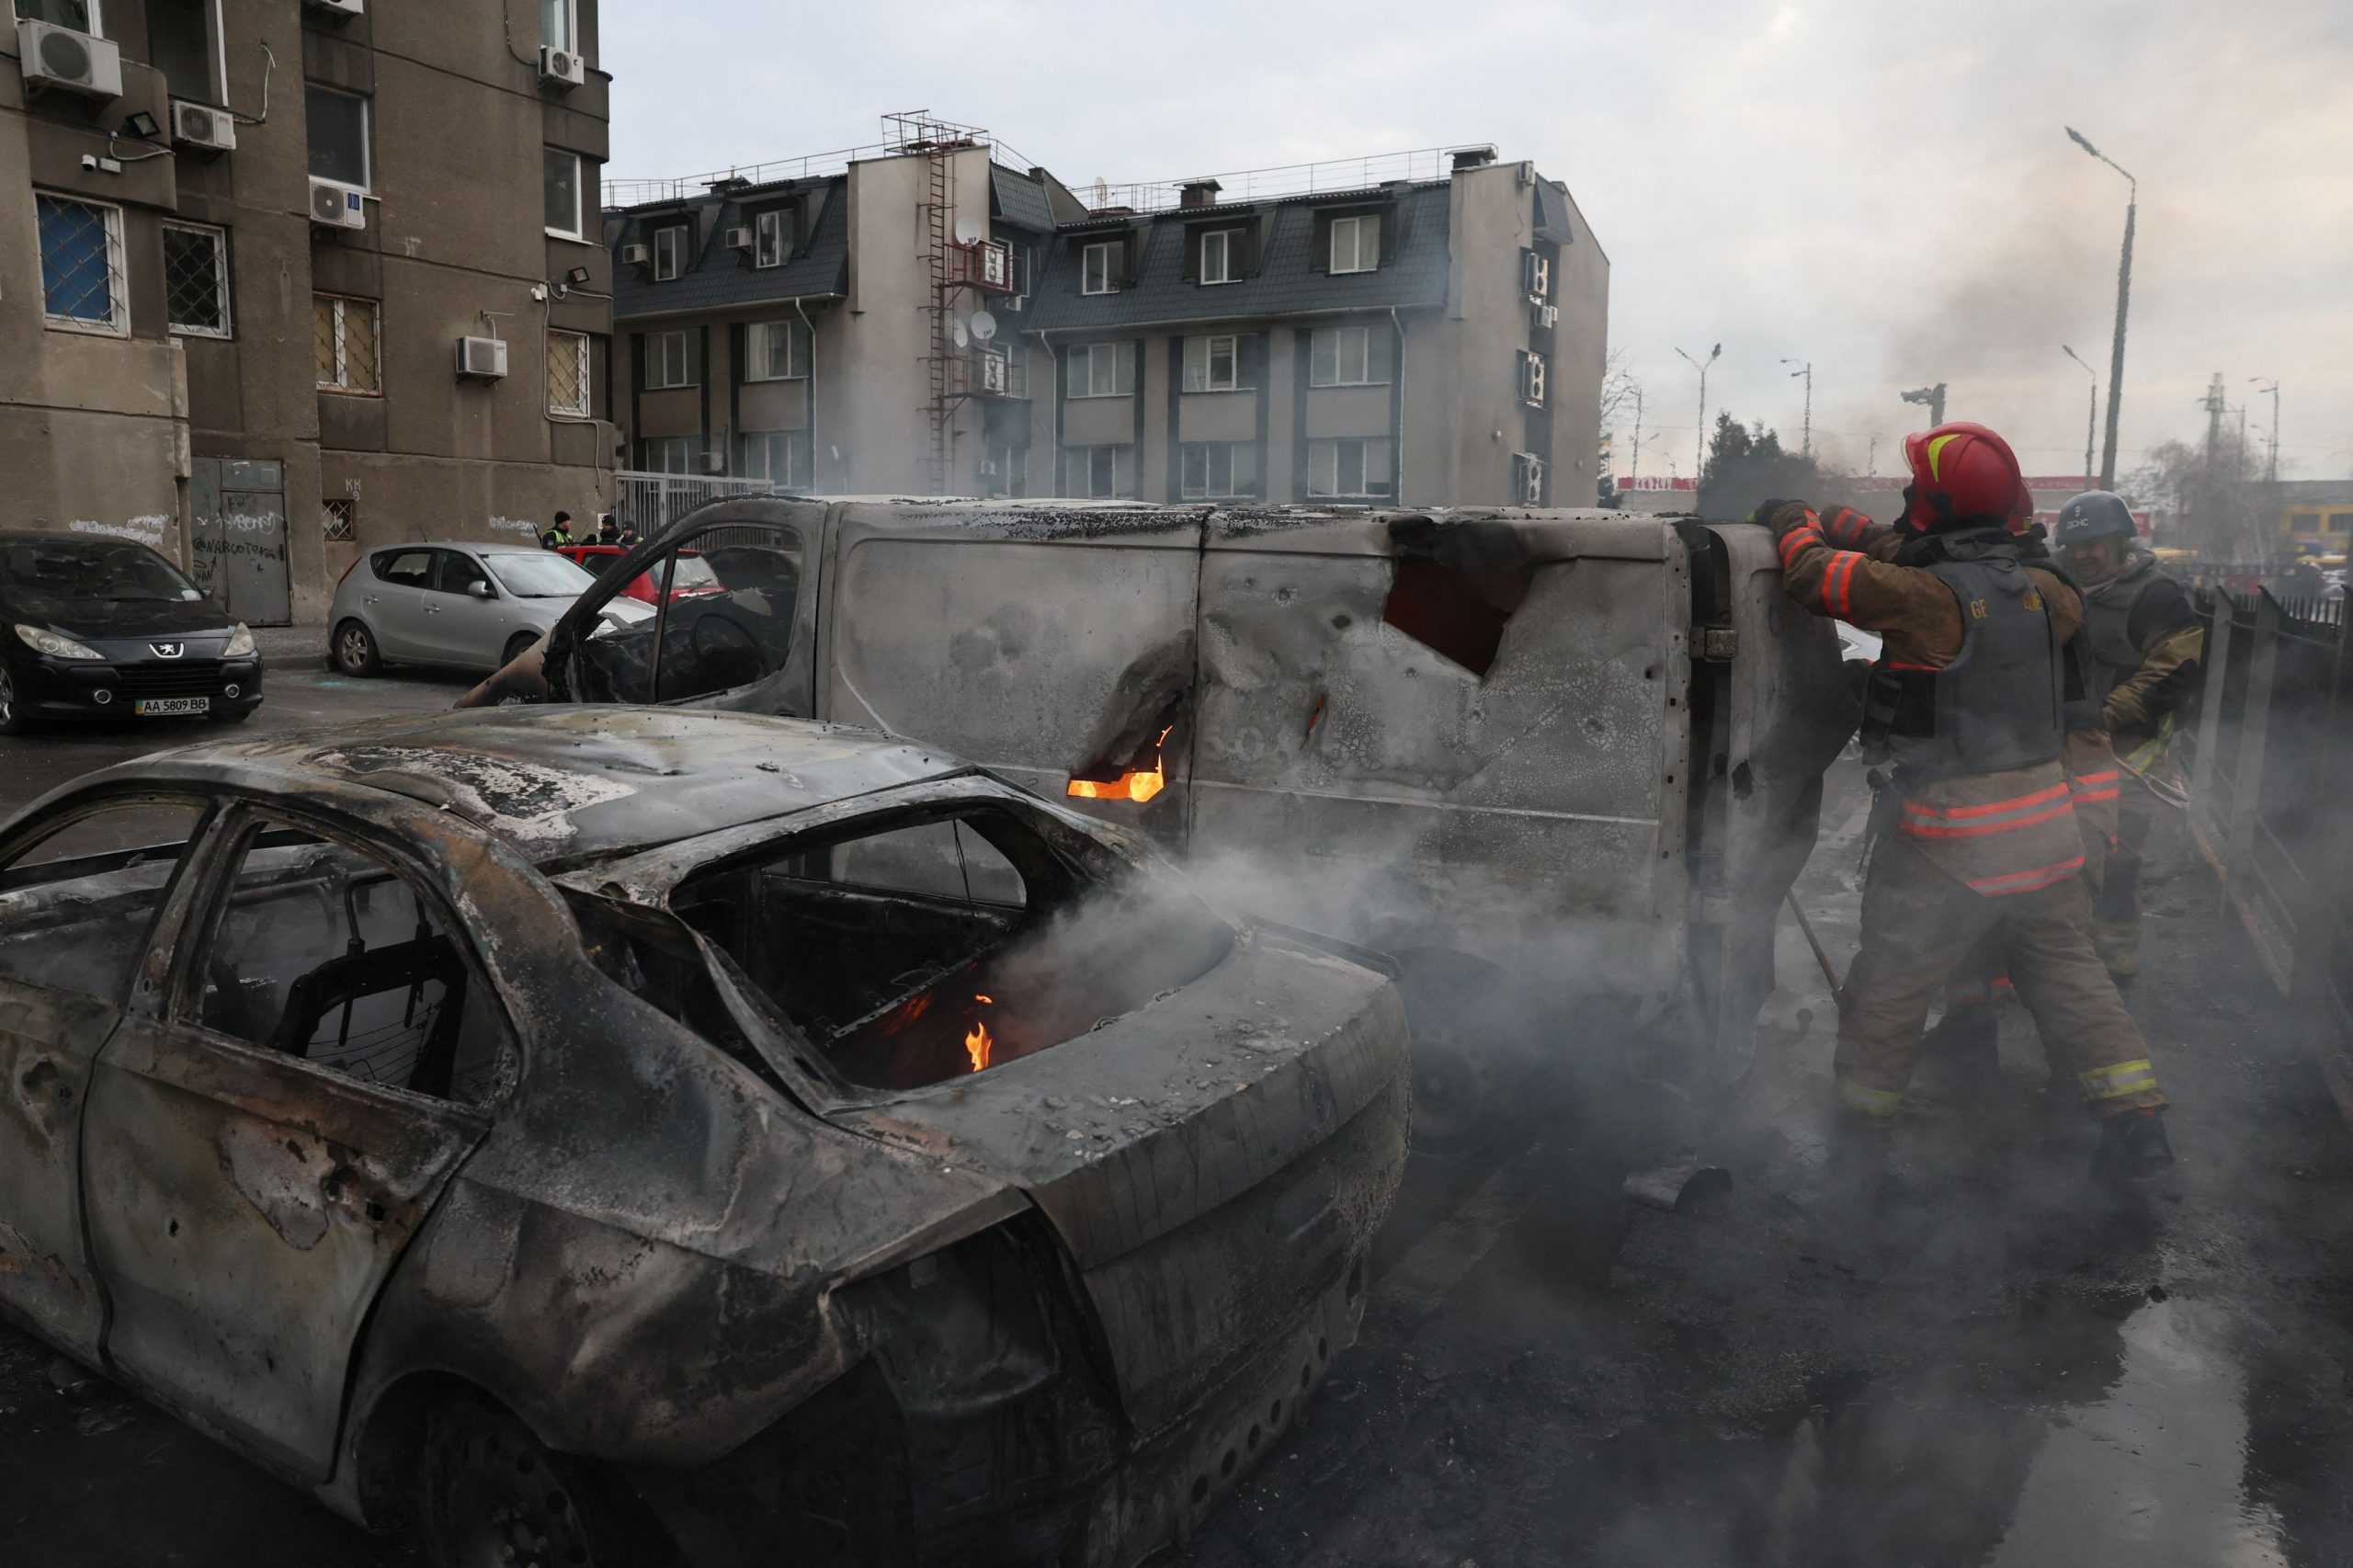 Θα κρίνει το Μπαχμούτ τον πόλεμο στην Ουκρανία;